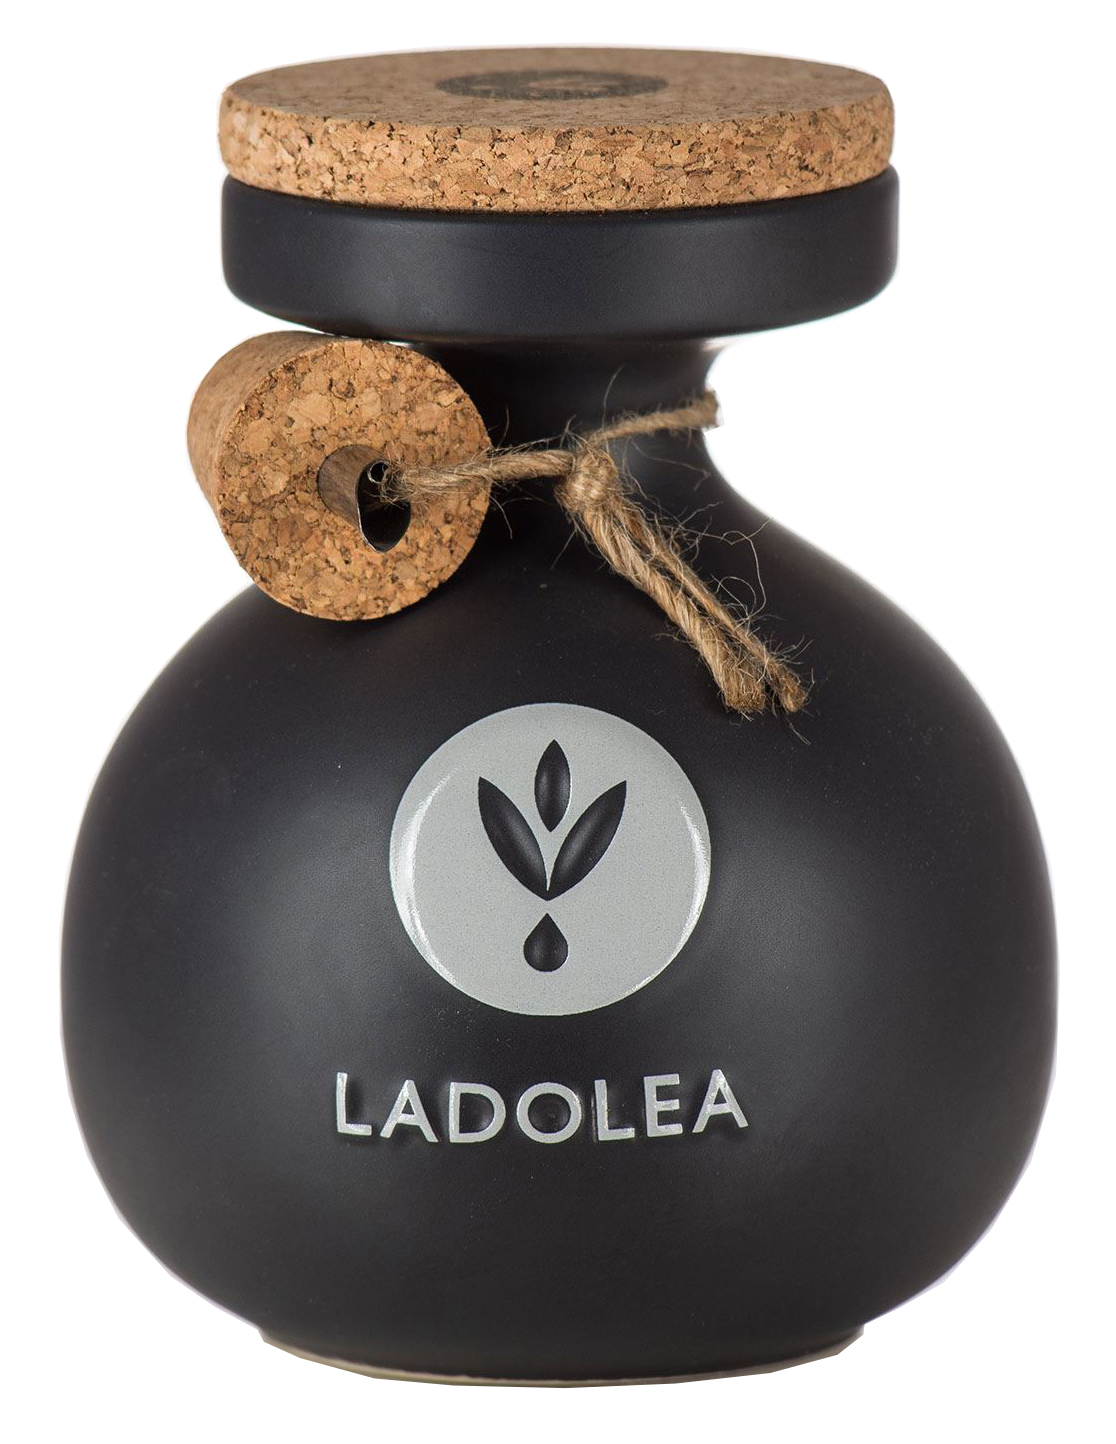 Extra panenský olivový olej v černé keramické nádobě Ladolea velikost nádoby: 600ml